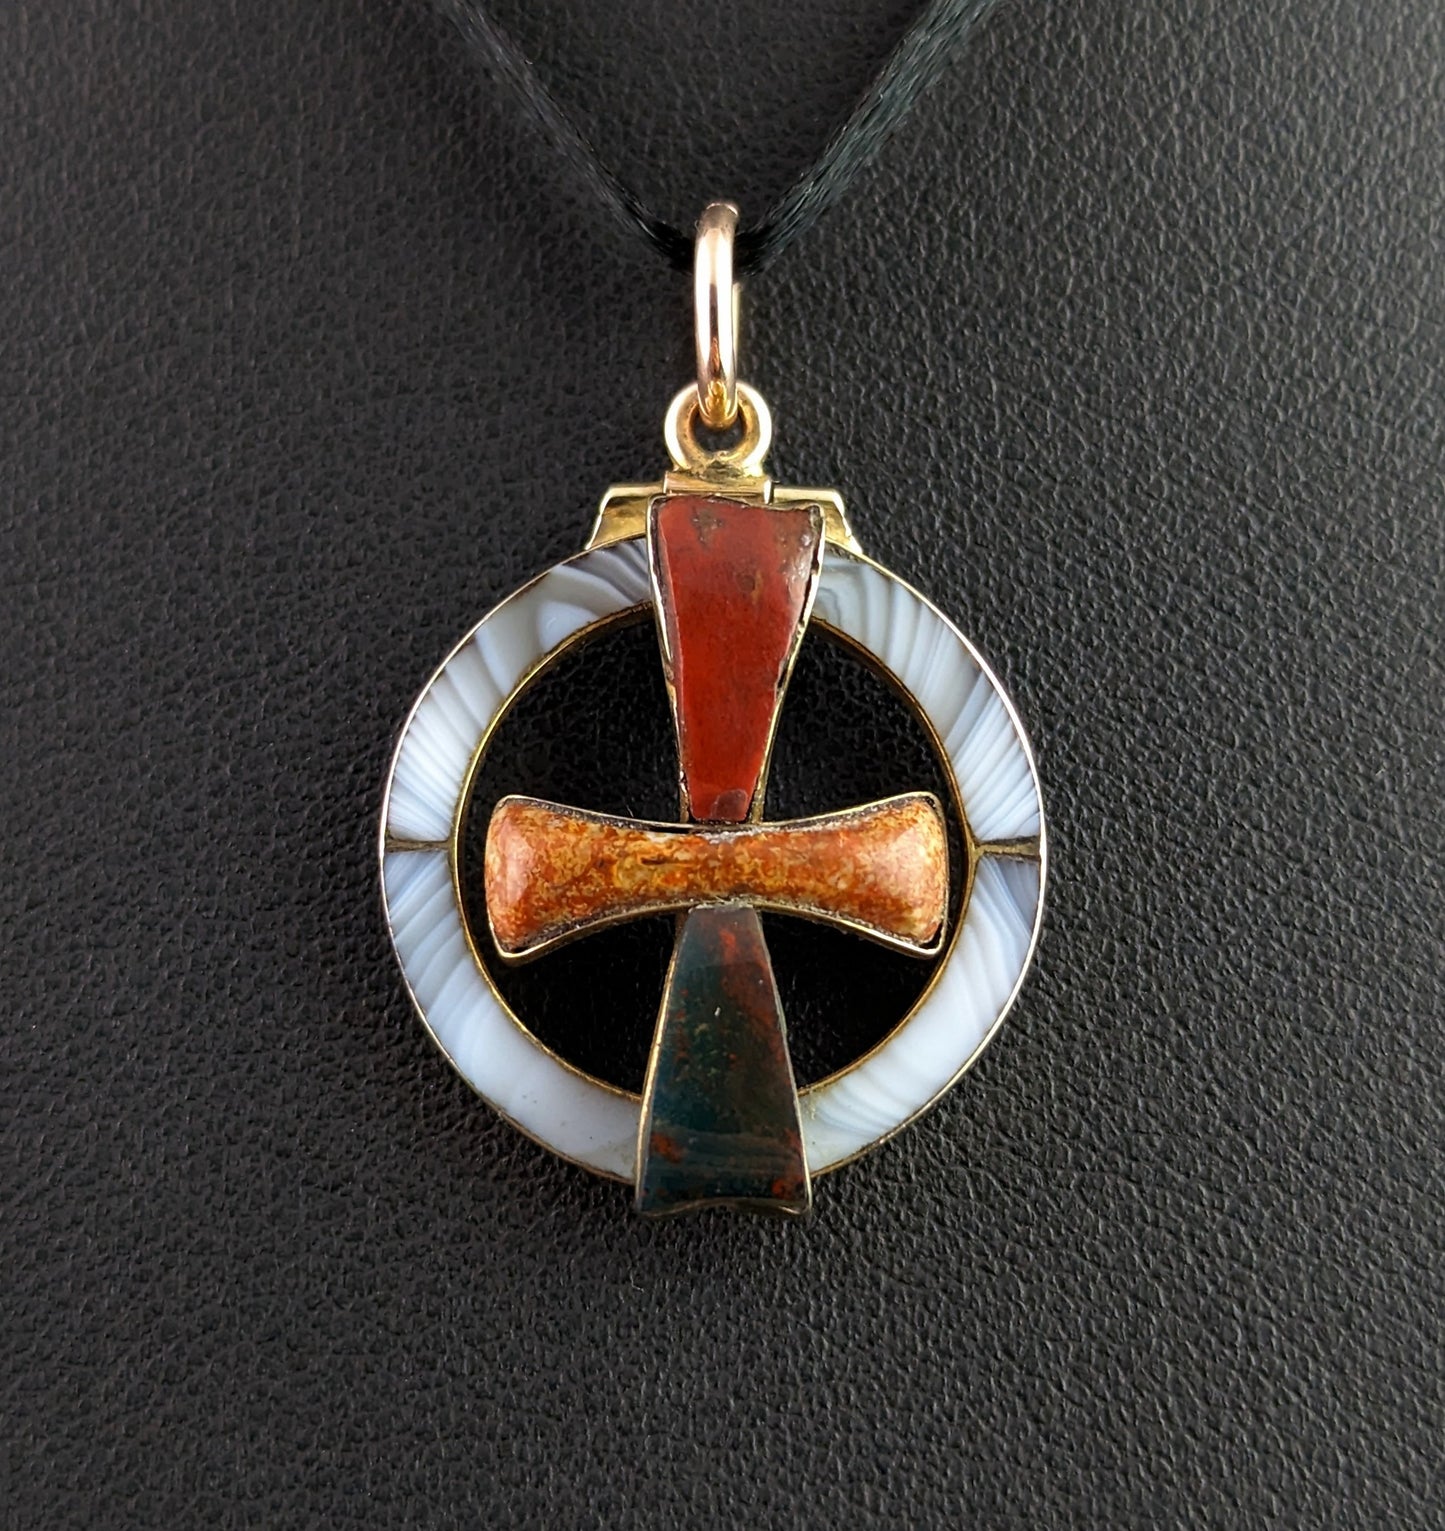 Antique Scottish agate cross pendant, 9ct gold